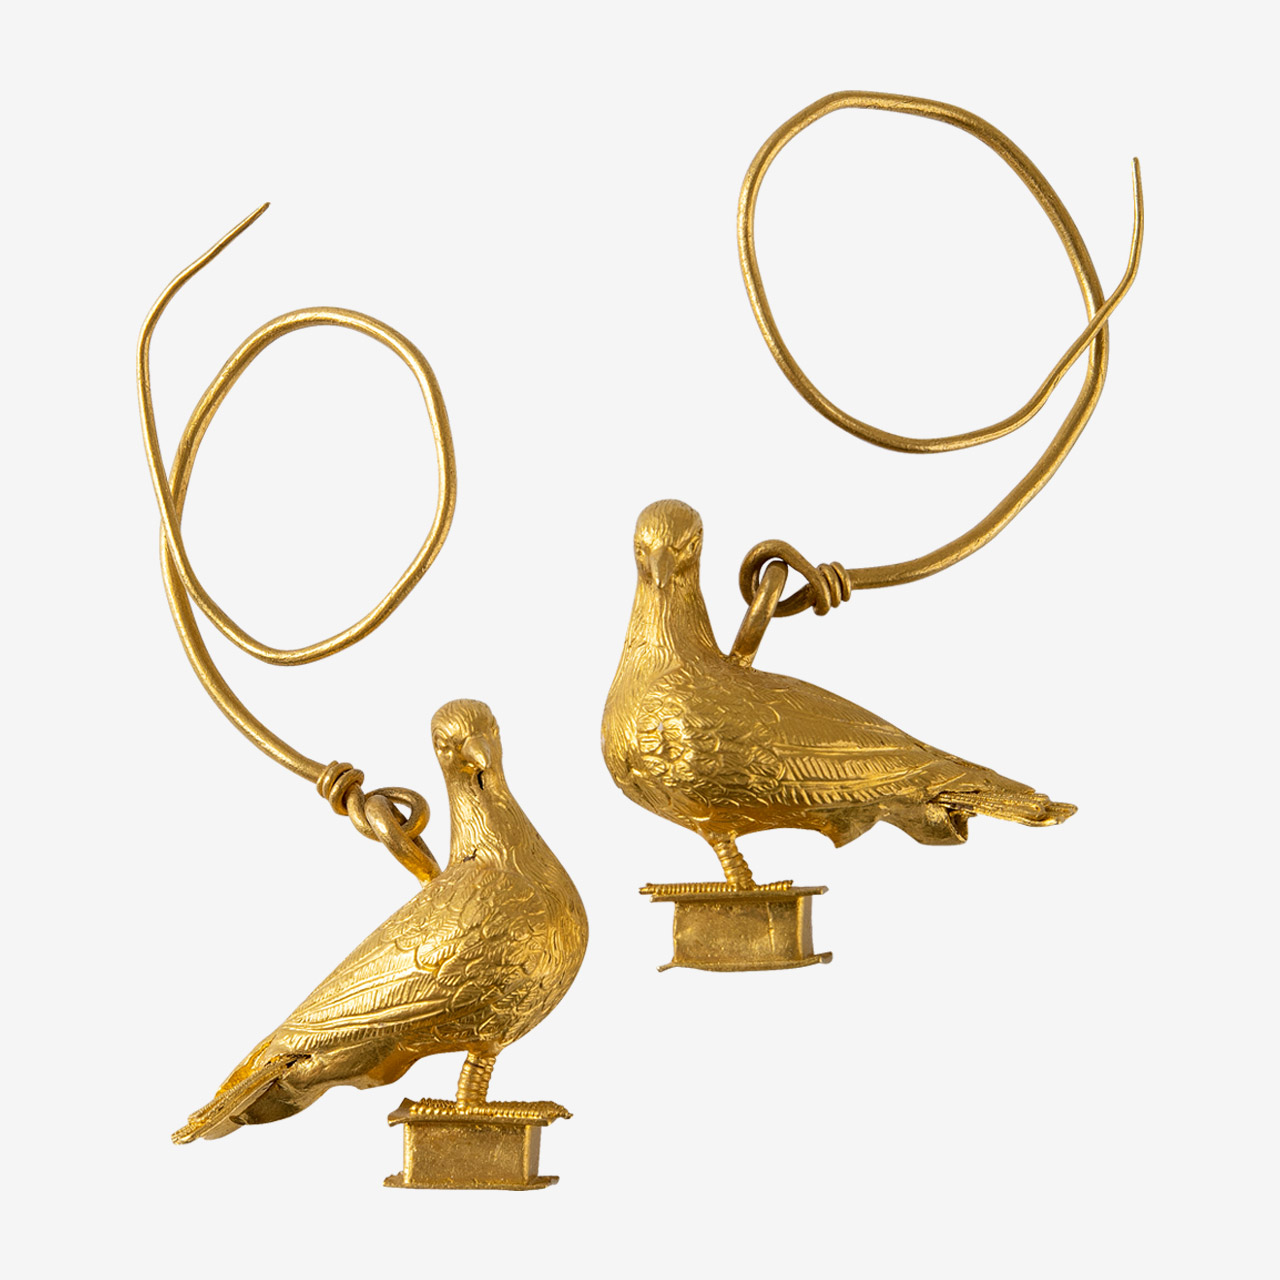 Ζεύγος χρυσών ενωτίων (σκουλαρικιών) με παράσταση περιστεριών. Τα περιστέρια είναι αγαπητό σχέδιο στην κοσμηματοτεχνία, ήδη από τον 3ο αι. π.Χ., όπως και οι ερωτιδείς, οι σειρήνες και άλλες φτερωτές μορφές.